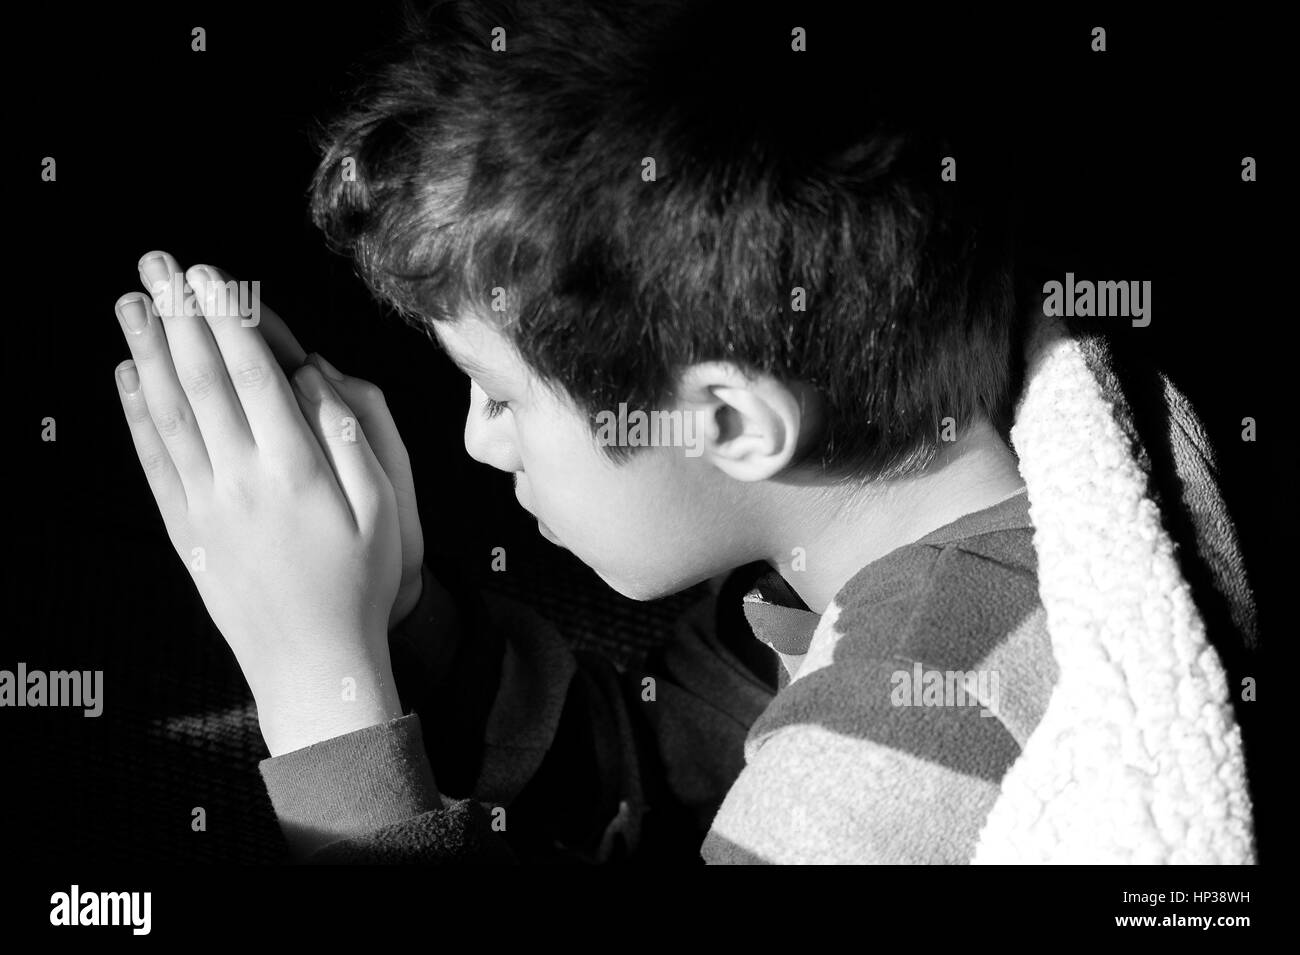 Jeune garçon à genoux pour prier à l'heure du coucher, les yeux clos, photo de foi chrétienne, concept religieux Banque D'Images